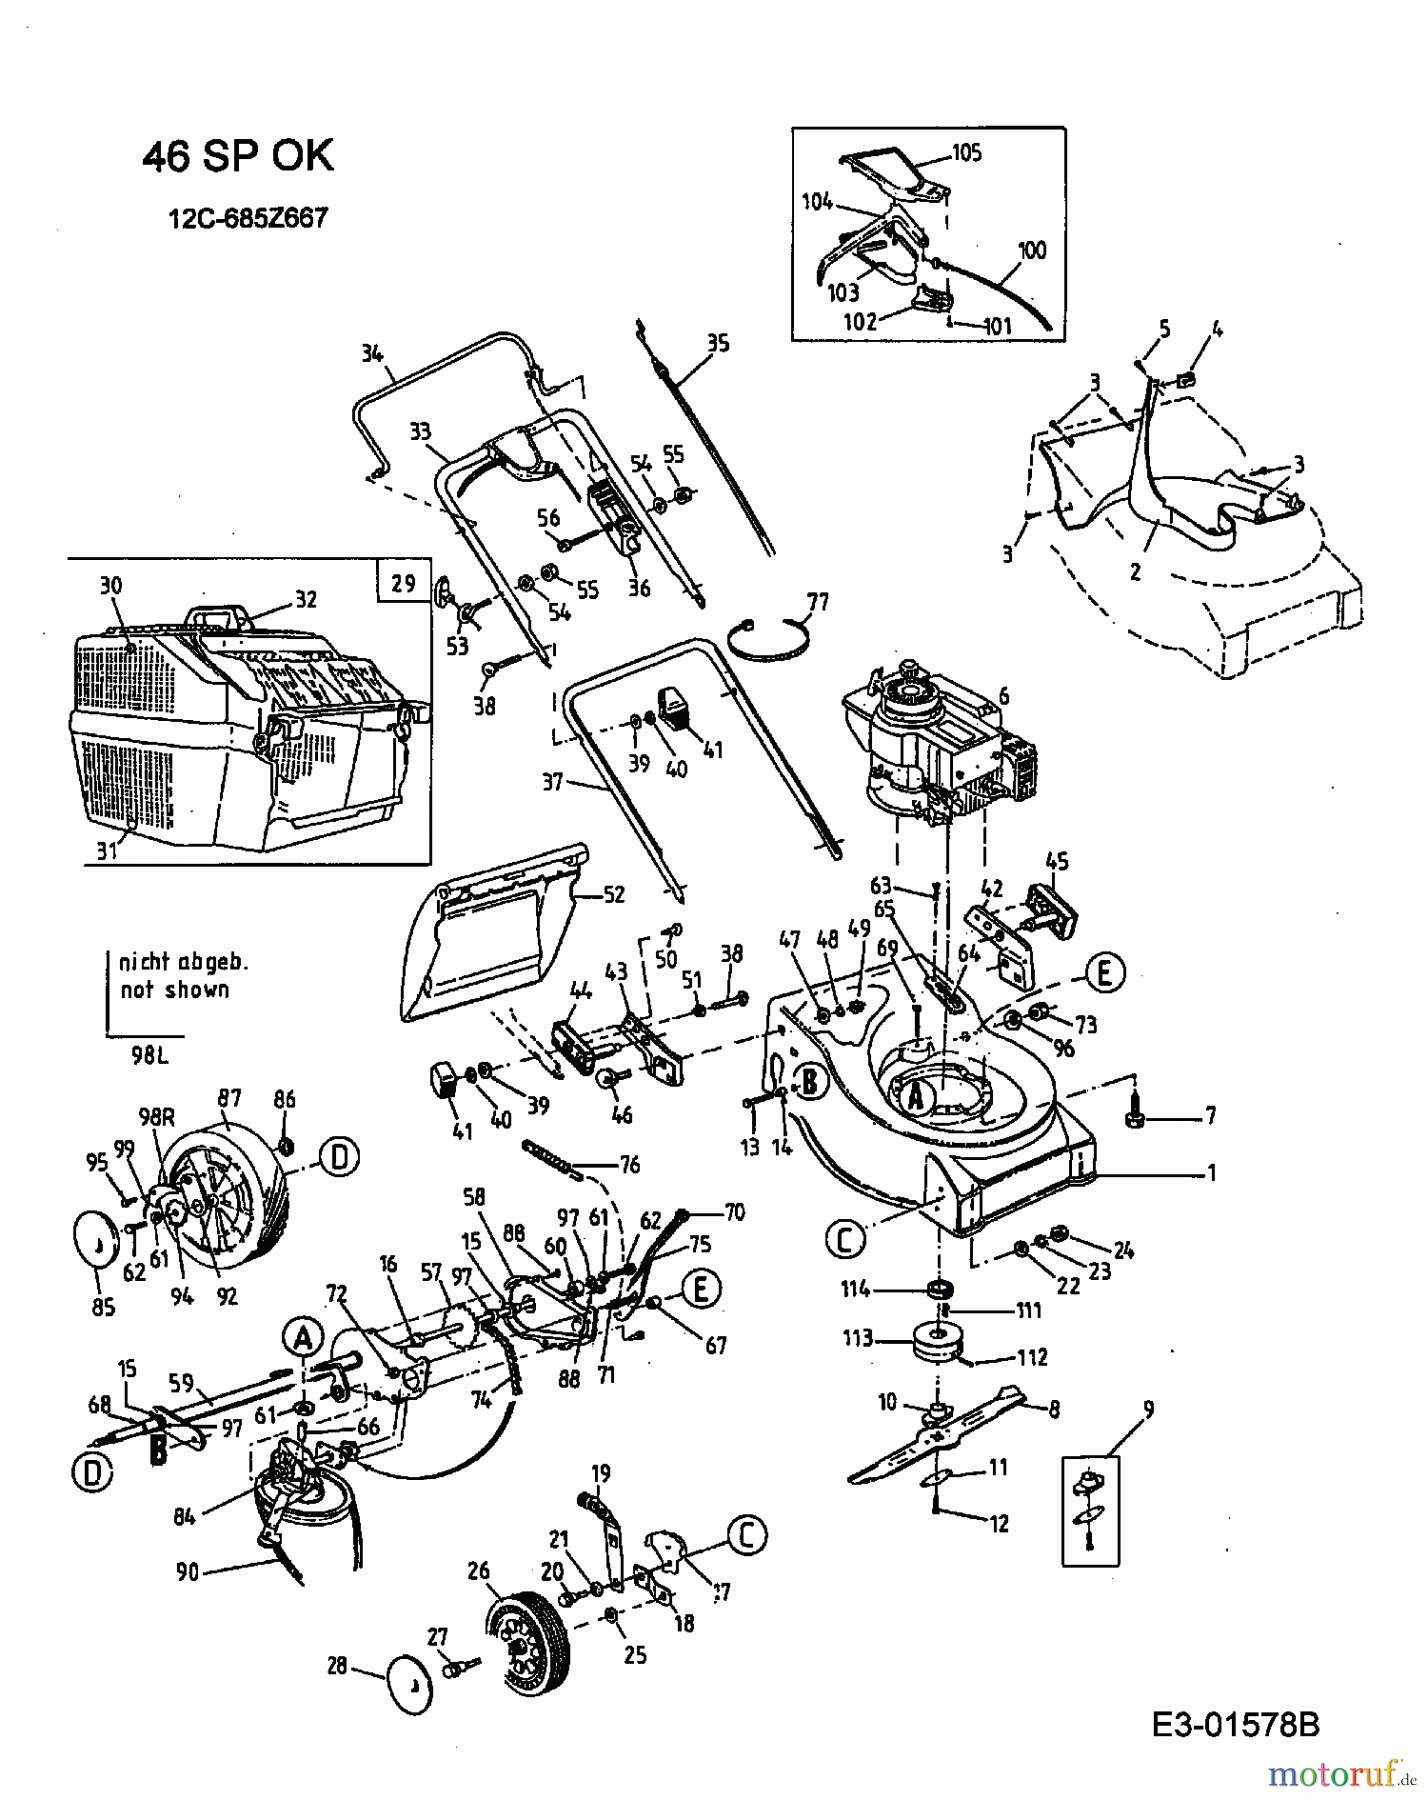  Ok Tondeuse thermique tractée 46 SP 12C-685Z667  (2003) Machine de base